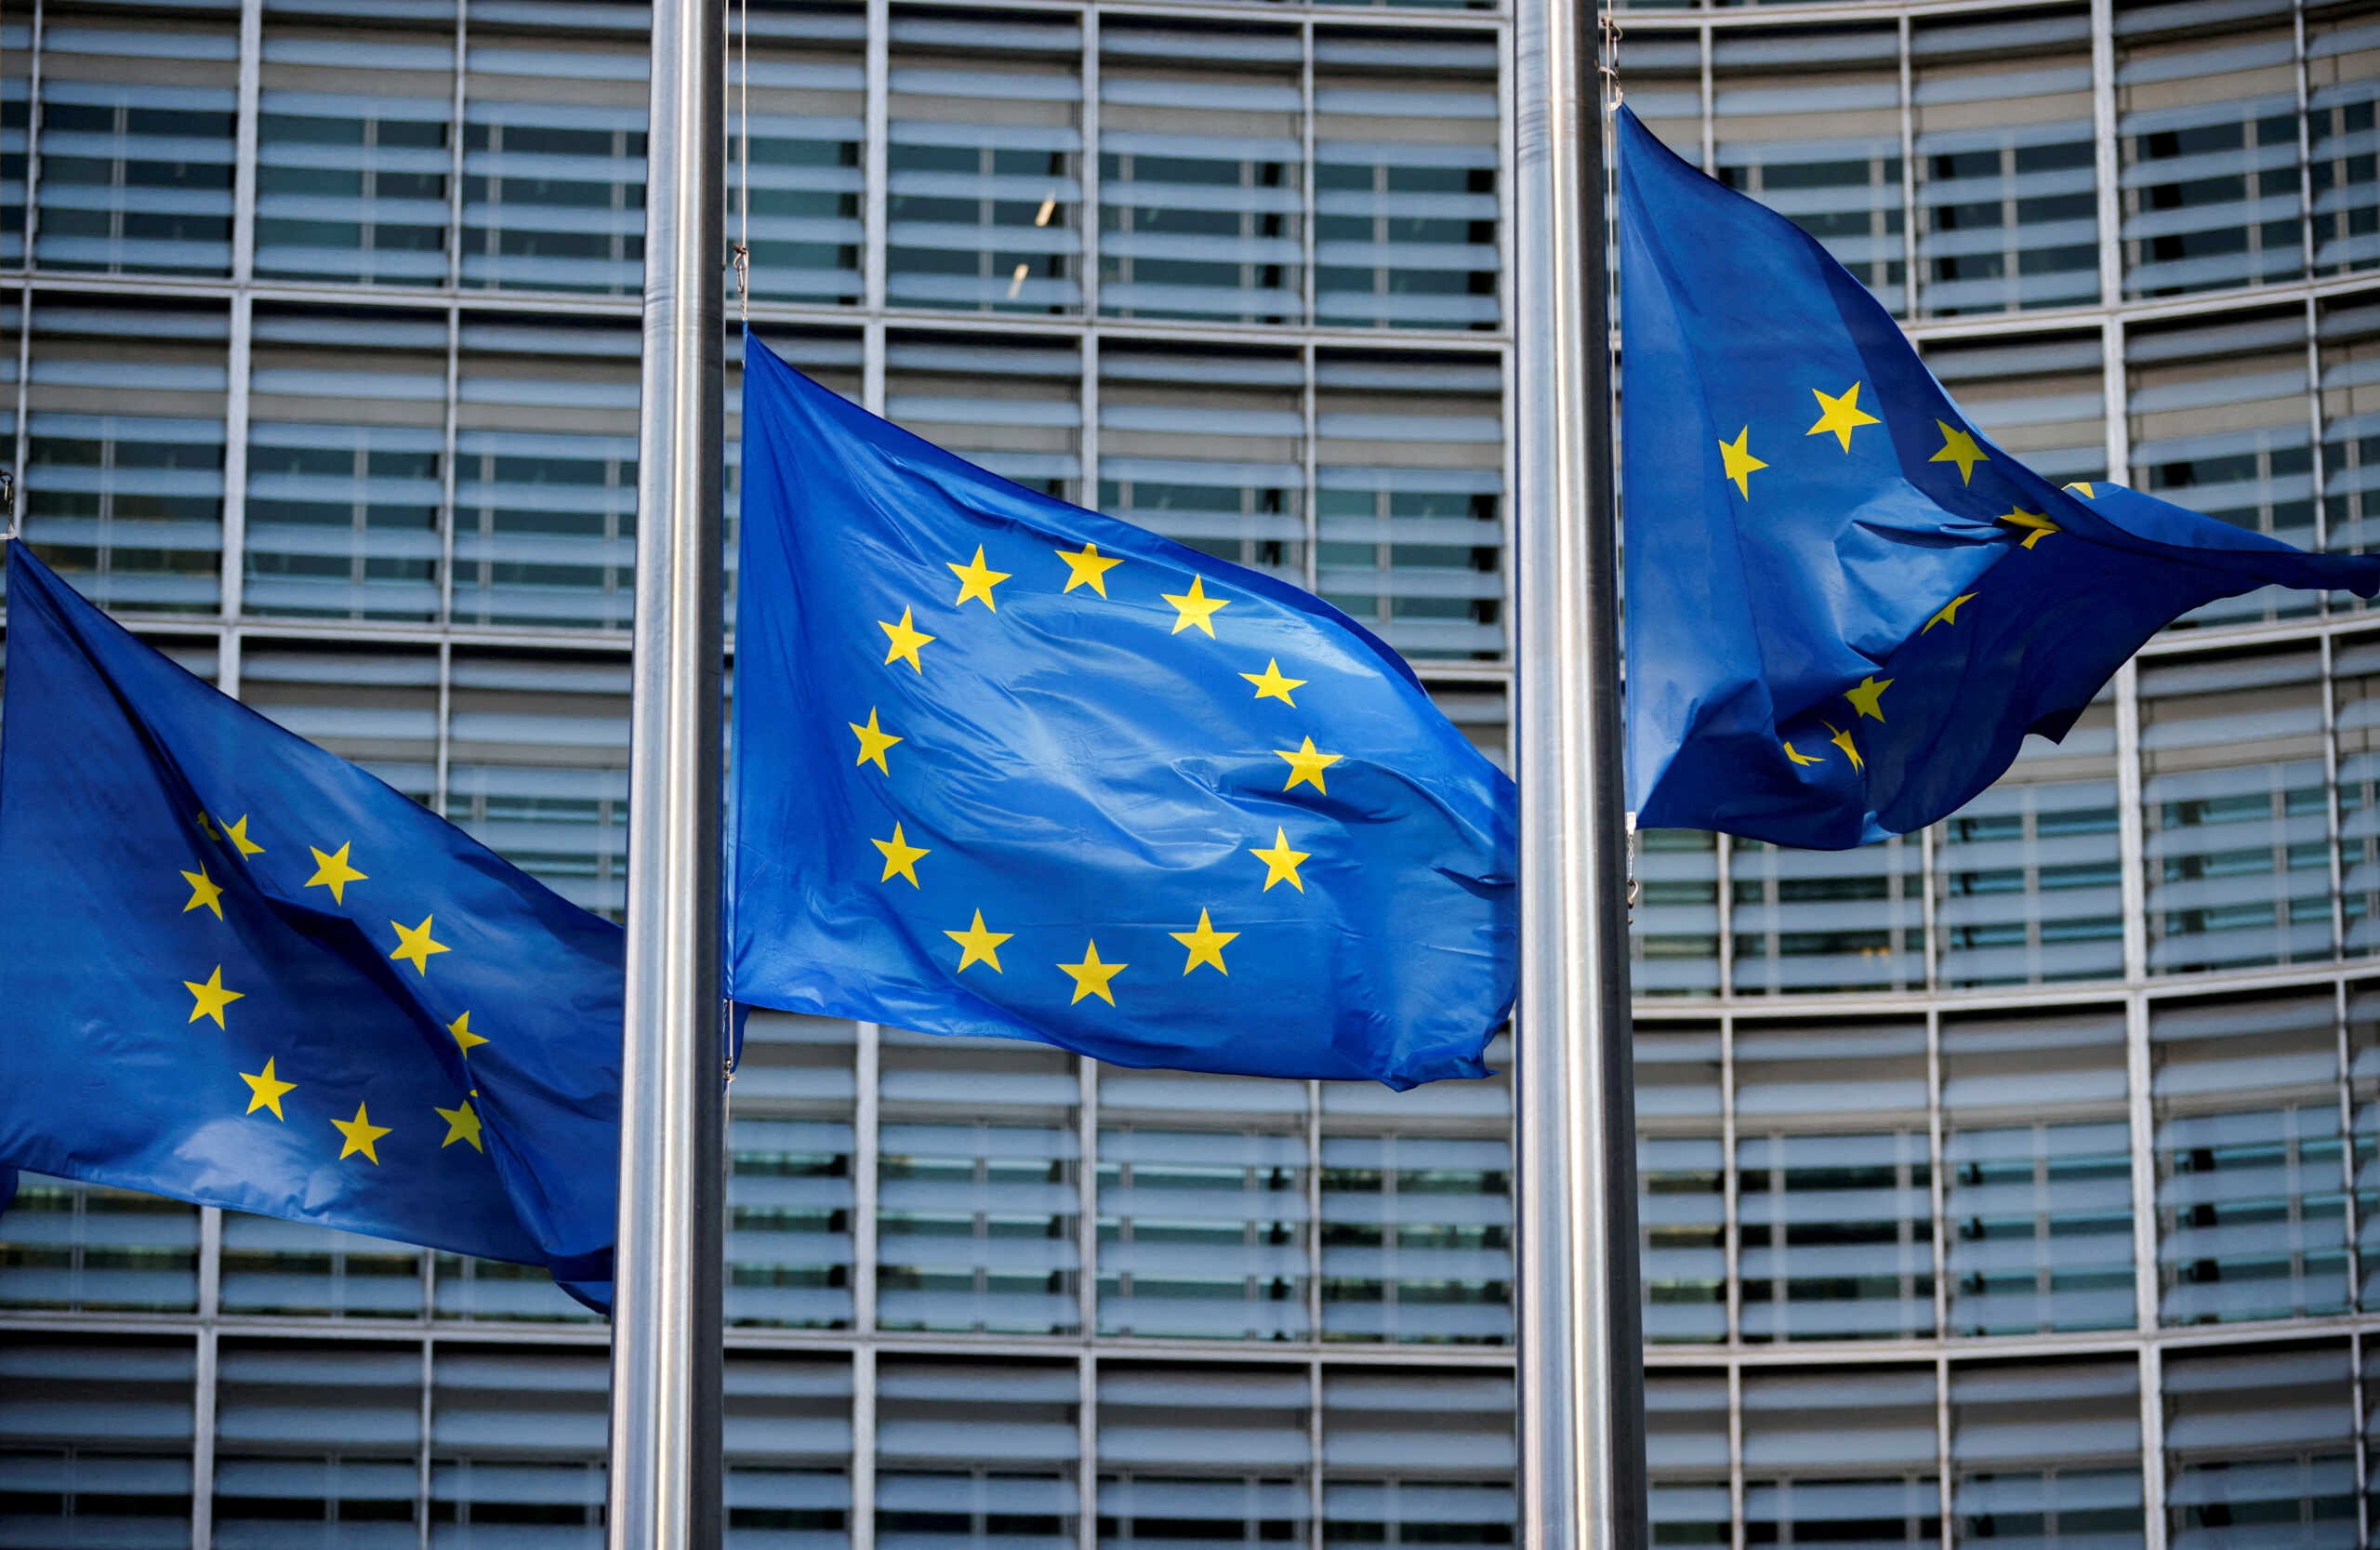 ΕΕ: Έρχονται νέες εκδόσεις ευρωπαϊκών ομολόγων – Η συνολική αξία θα ξεπεράσει το 1 τρισ. ευρώ